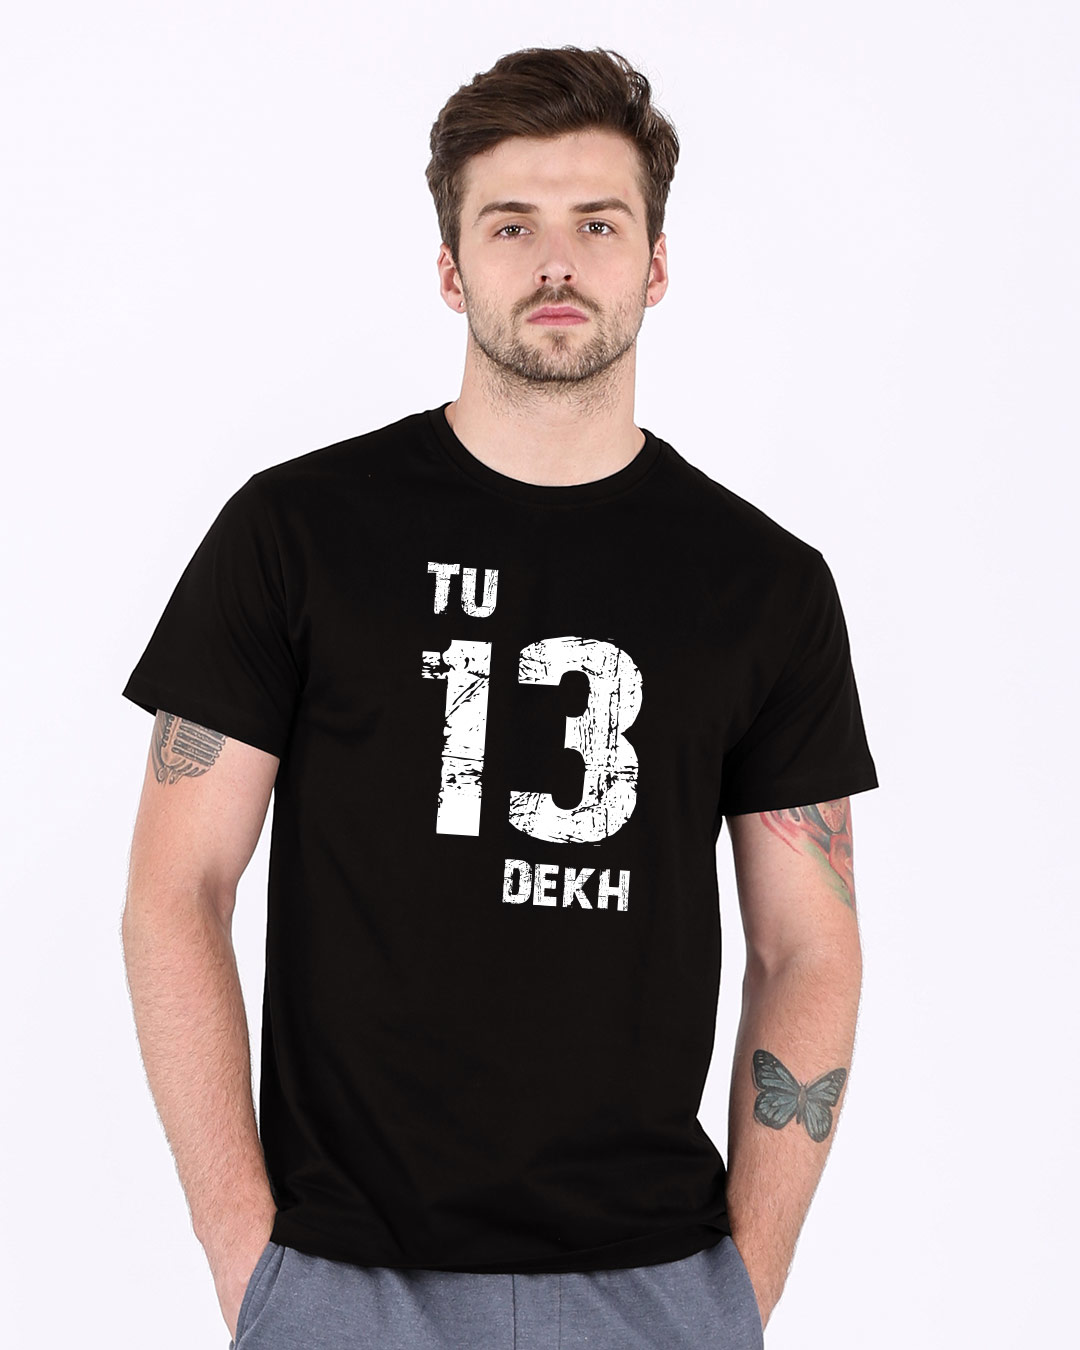 Buy Tu 13 Dekh Vintage Half Sleeve T-Shirt Online at Bewakoof